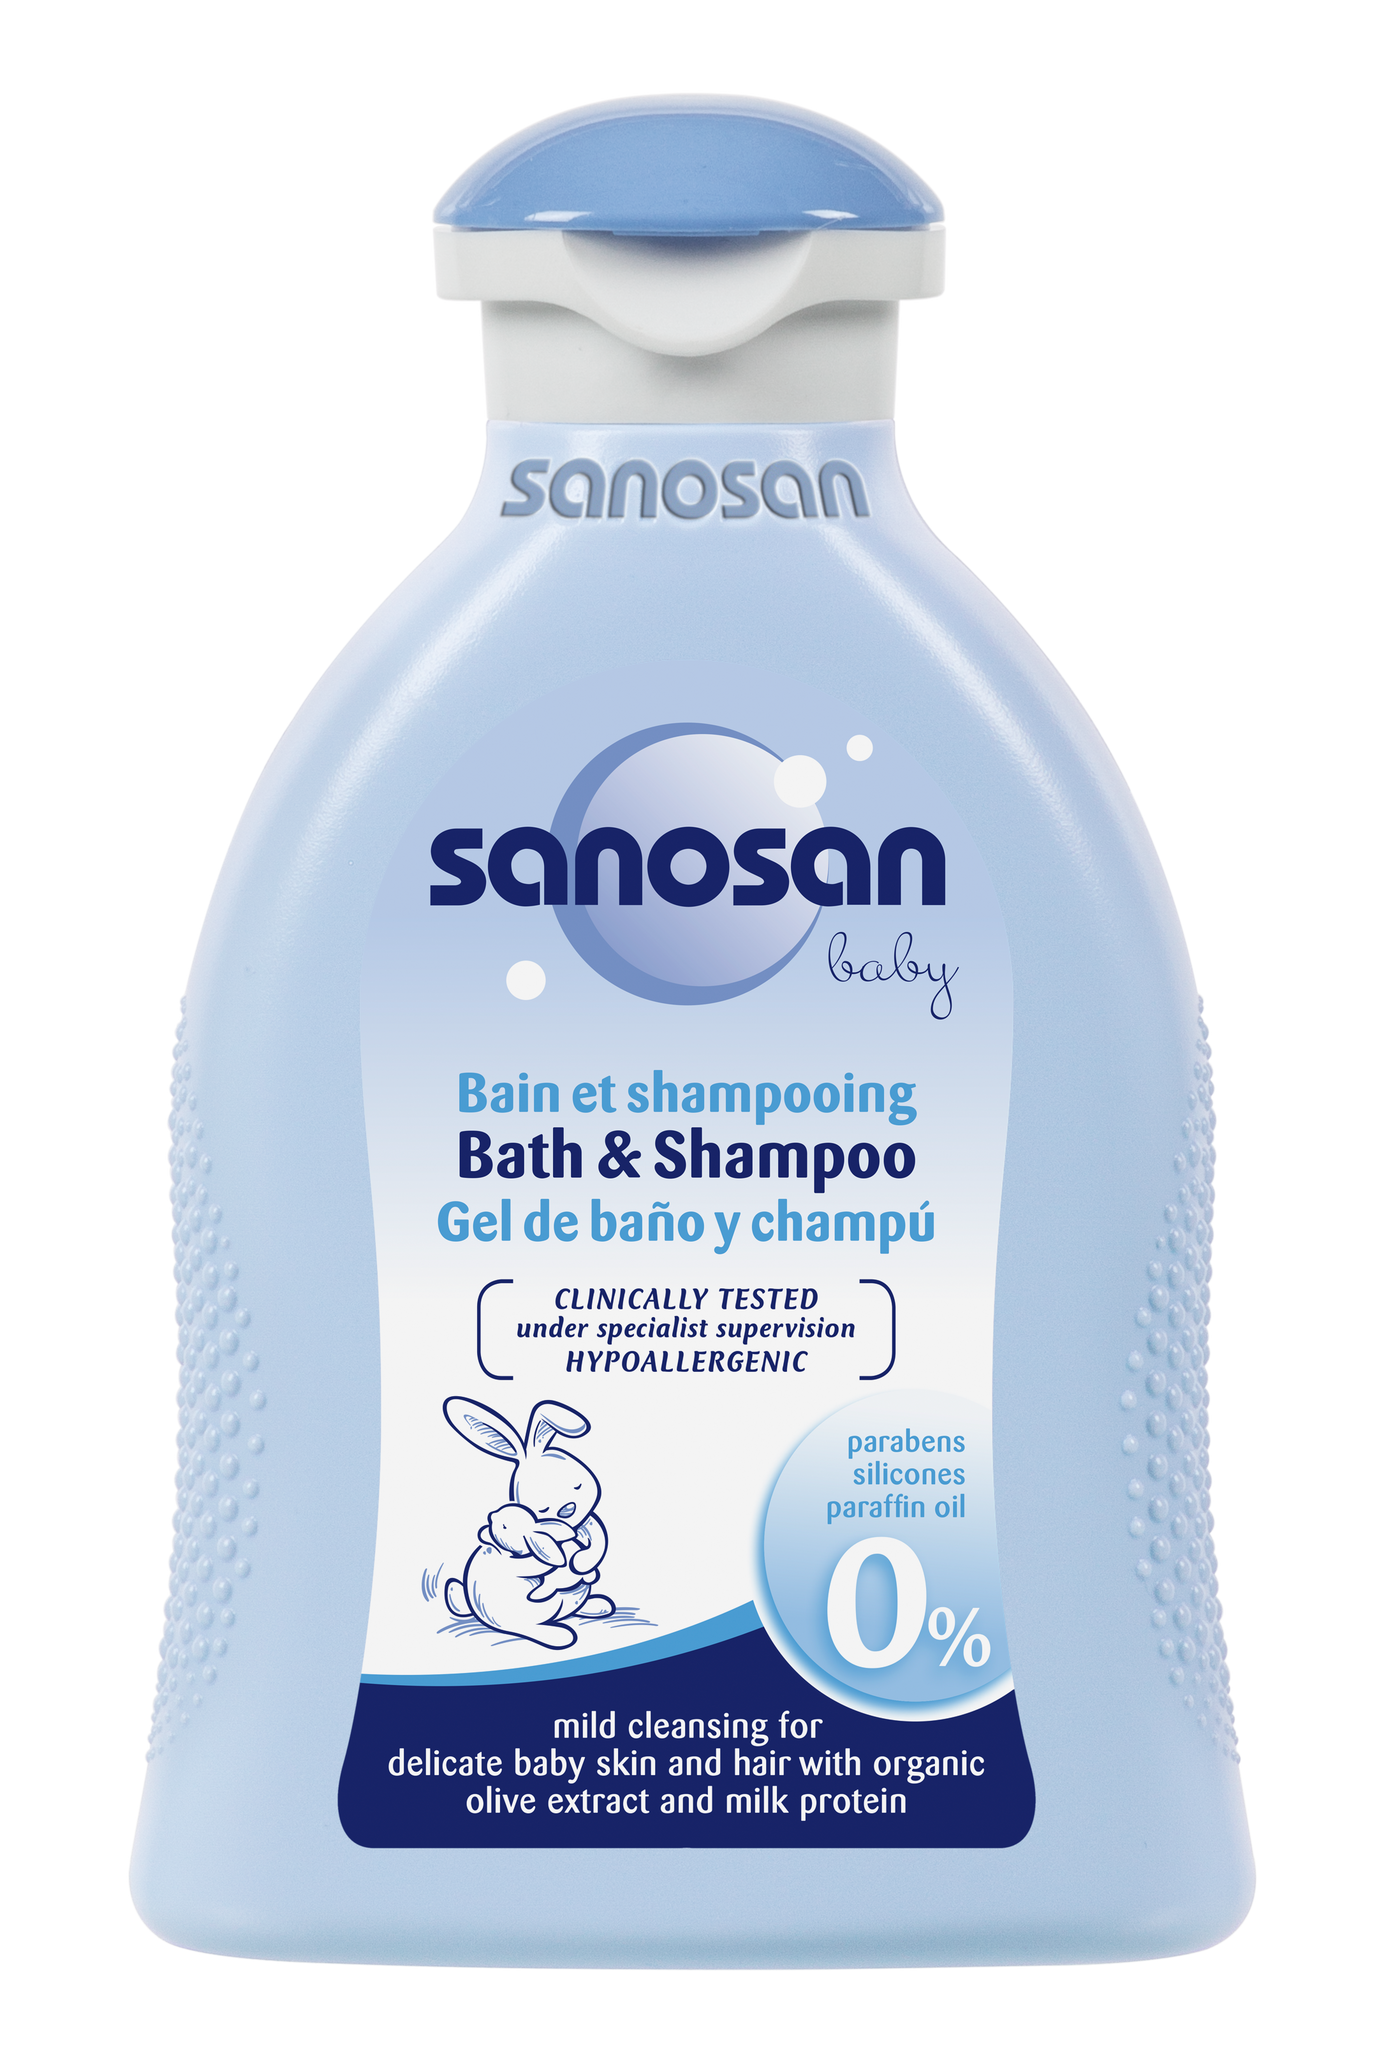 Sanosan Shampoo and bath